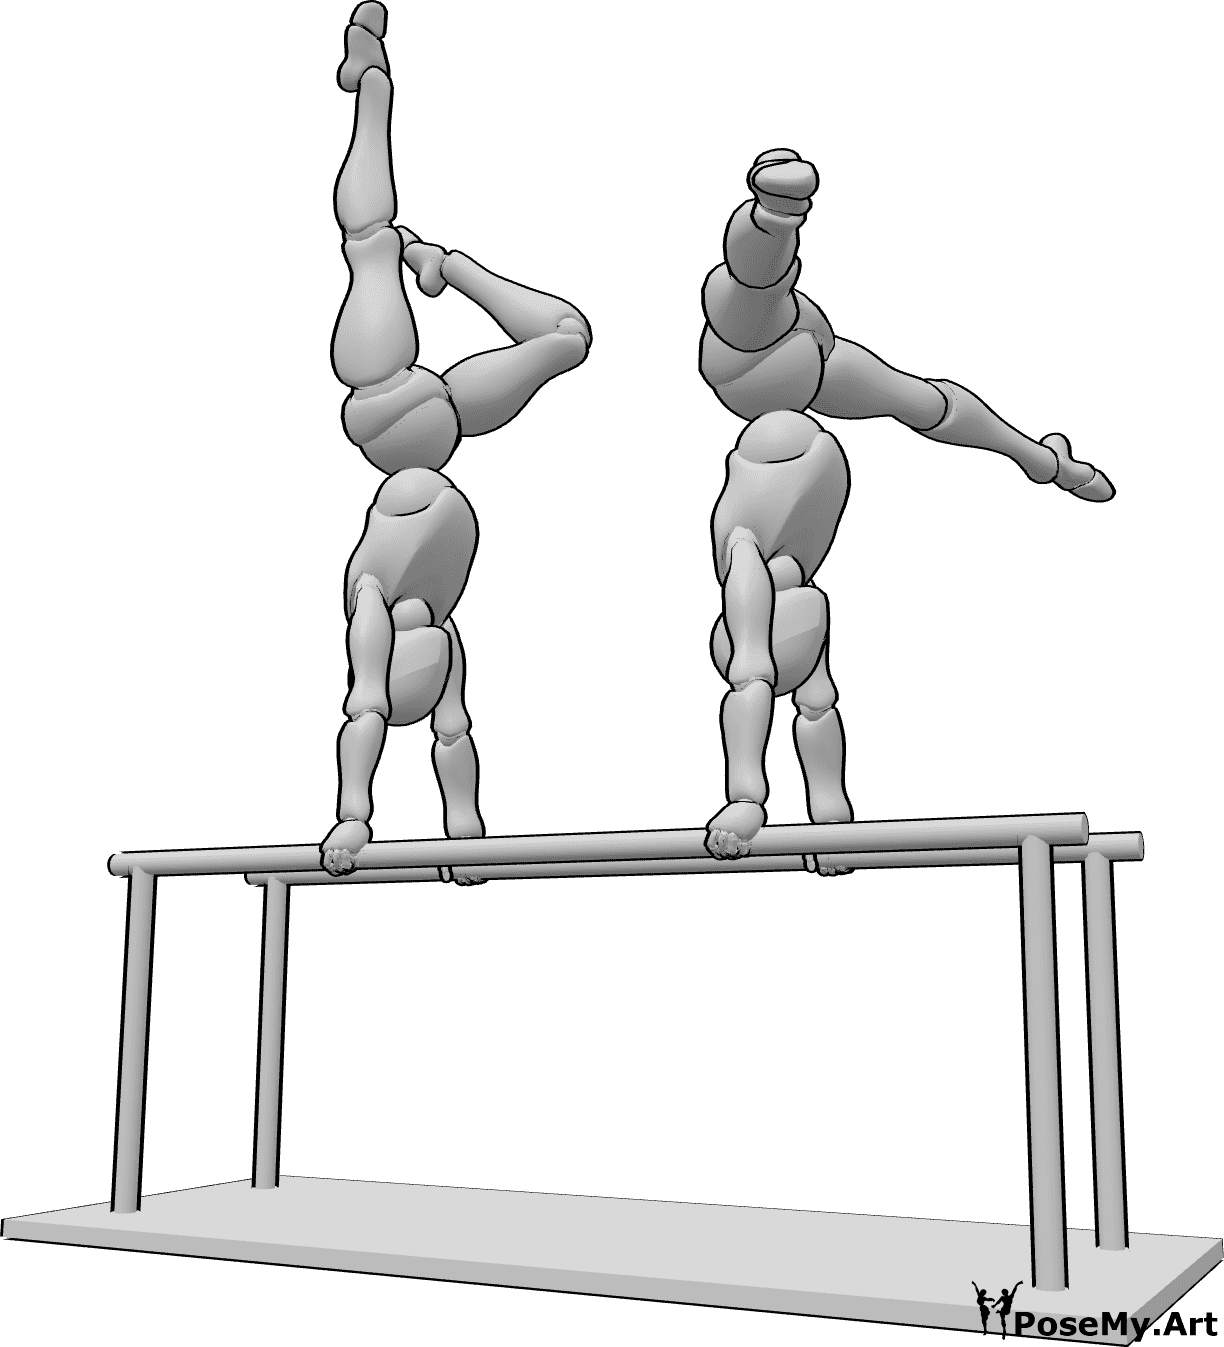 Referencia de poses- Dos mujeres de gimnasia posan - Dos mujeres hacen gimnasia en las barras paralelas, levantando las manos y las piernas.